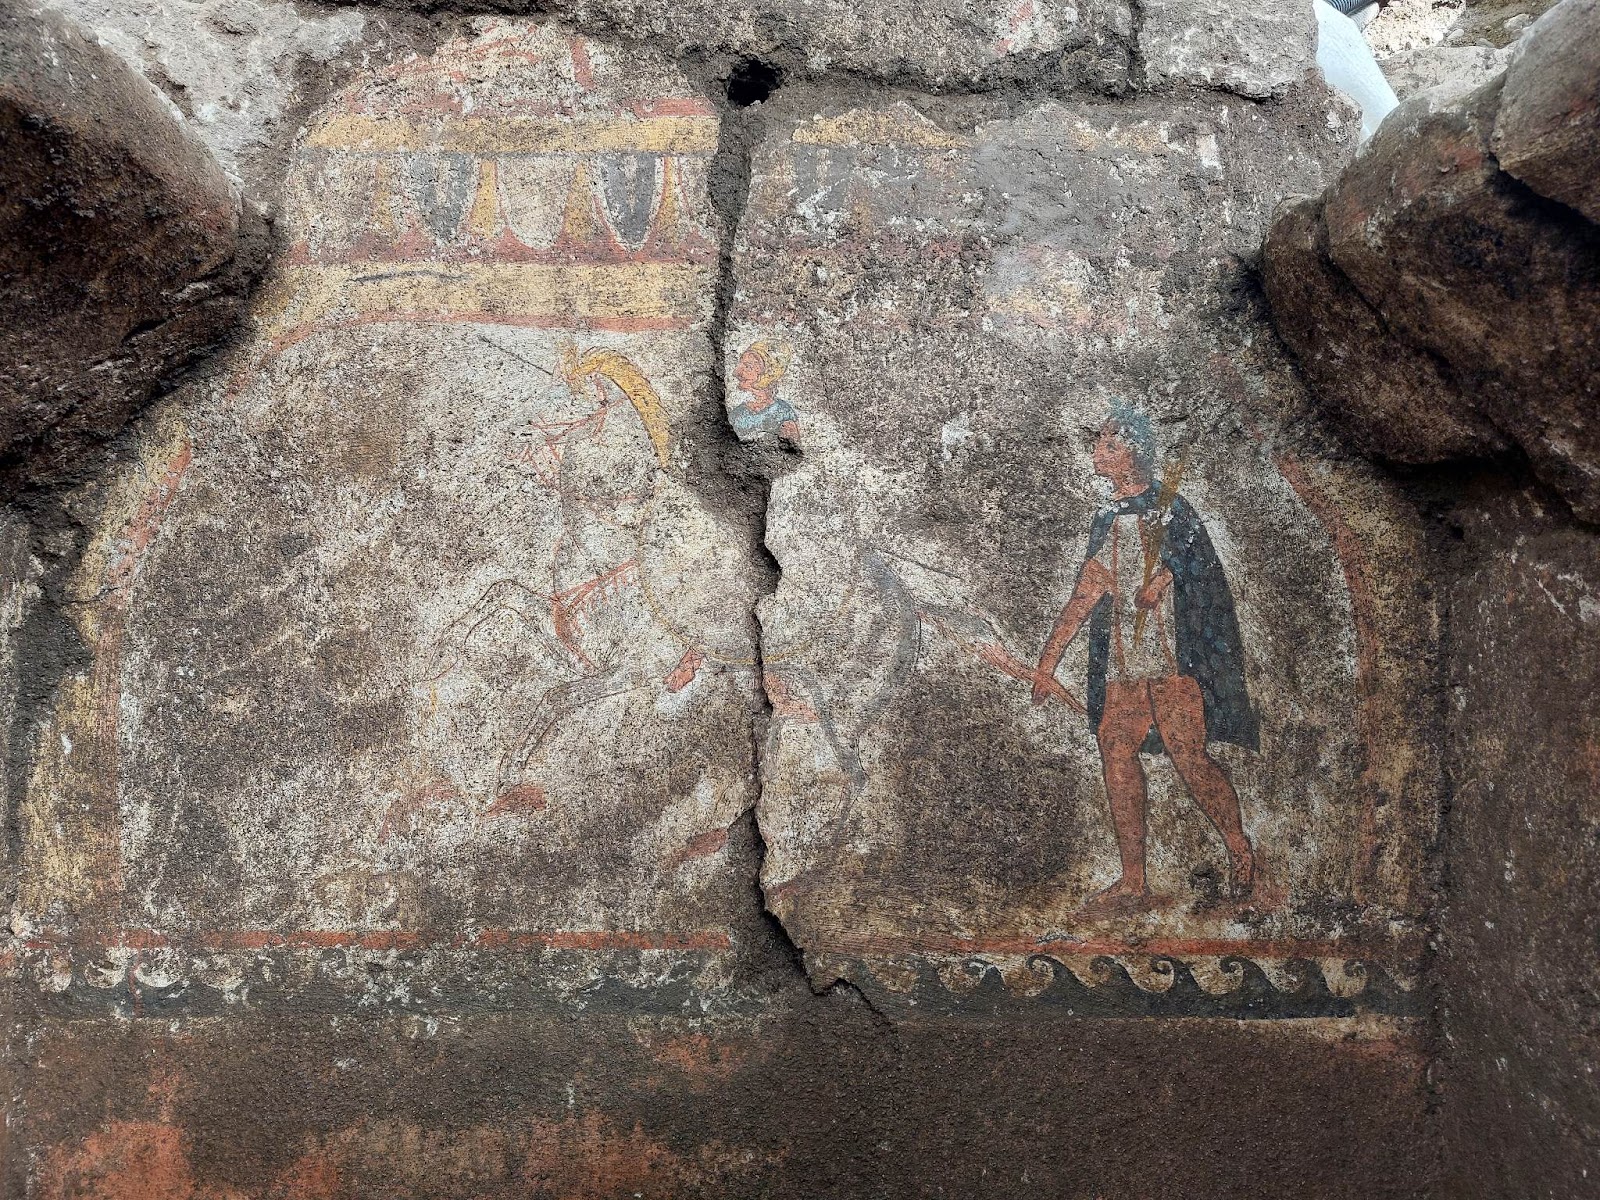 Ζωγραφισμένος τάφος μισθοφόρου πολεμιστή του 4ου αι. π.Χ. βρέθηκε στην Ιταλία